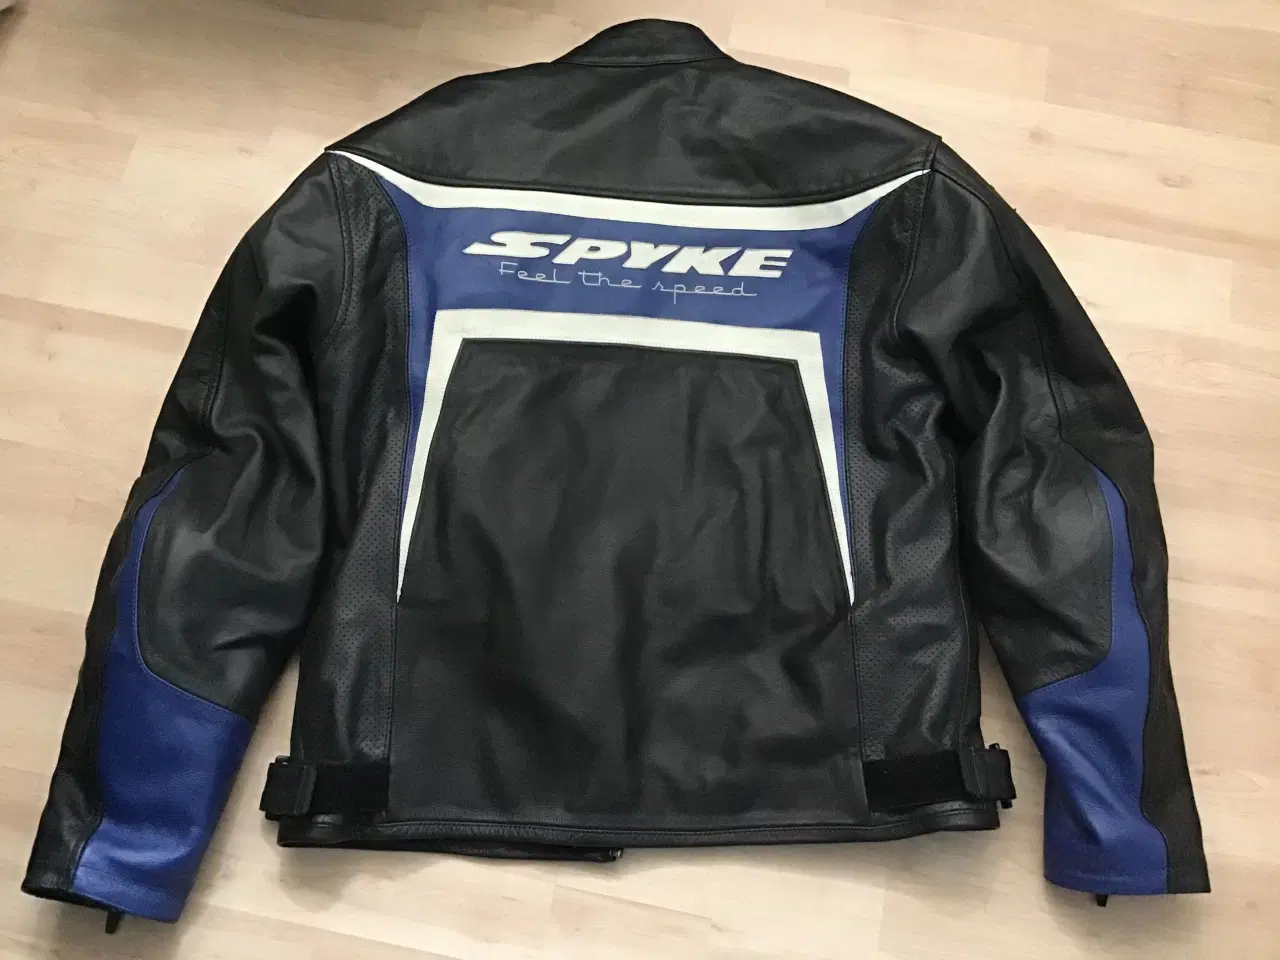 Billede 1 - Spyke mc læder jakke srt 56 sælges